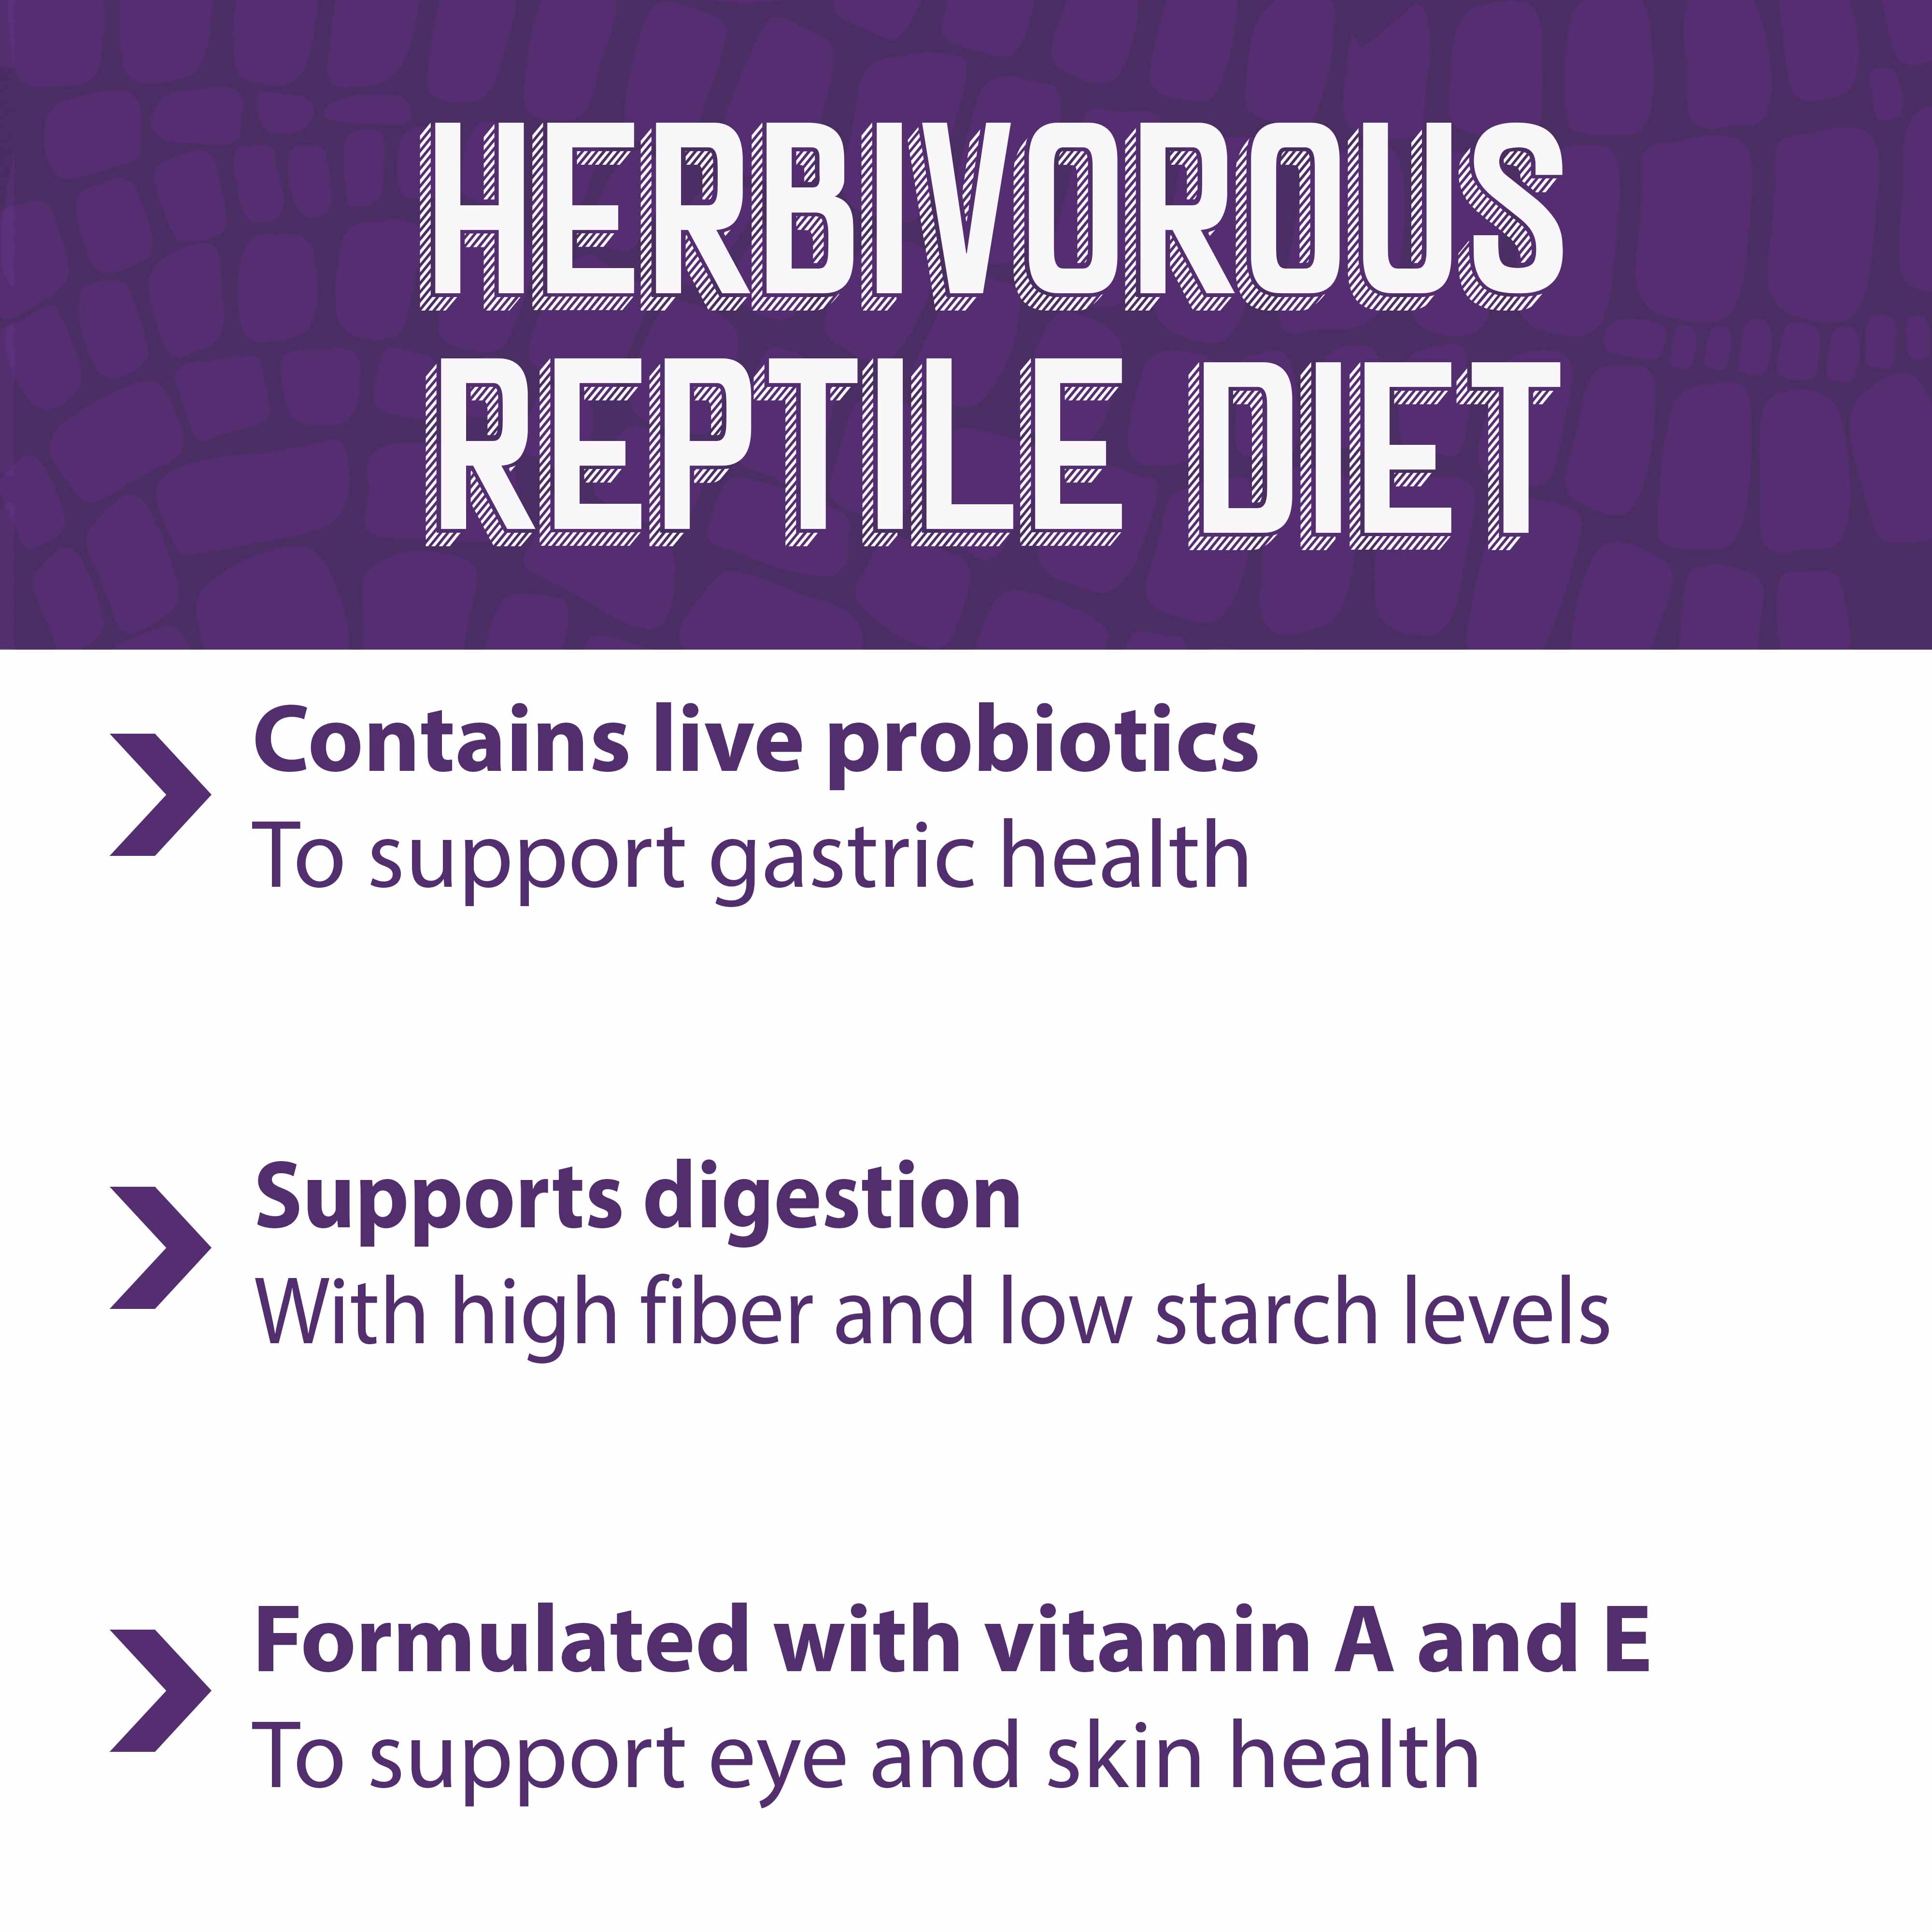 Herbivorous reptile diet contains live probiotics